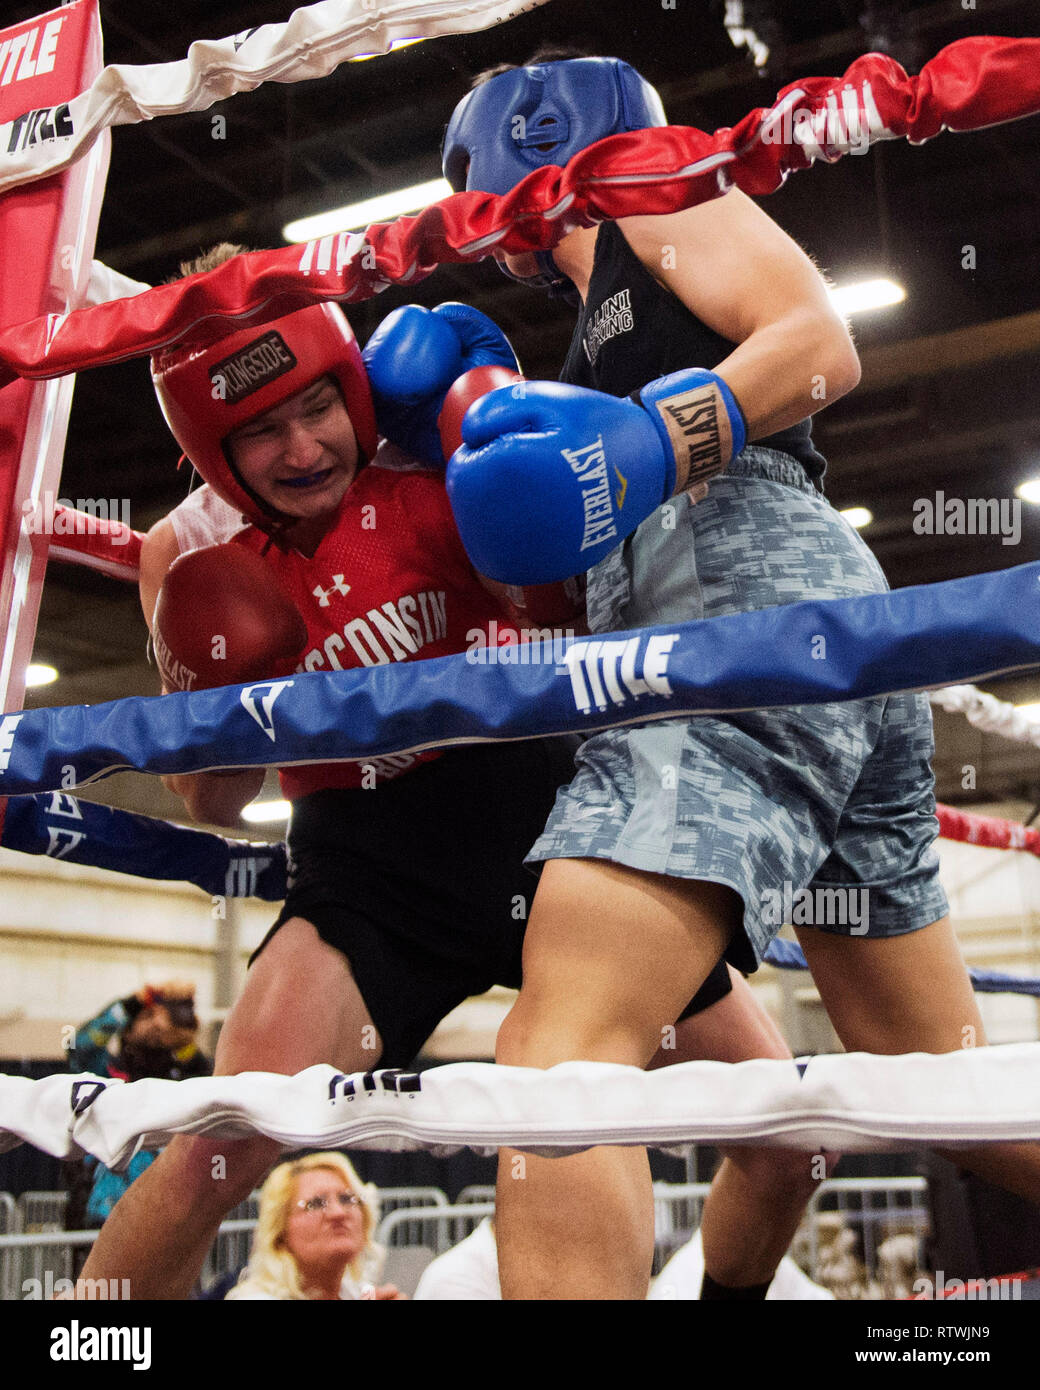 2 mars 2019 : Daniel Choi de l'Illinois se bat dans le coin avec Cade Allox du Wisconsin dans le concours de boxe amateur à l'Arnold Sports Festival à Columbus, Ohio, USA. Brent Clark/Alamy Live News Banque D'Images